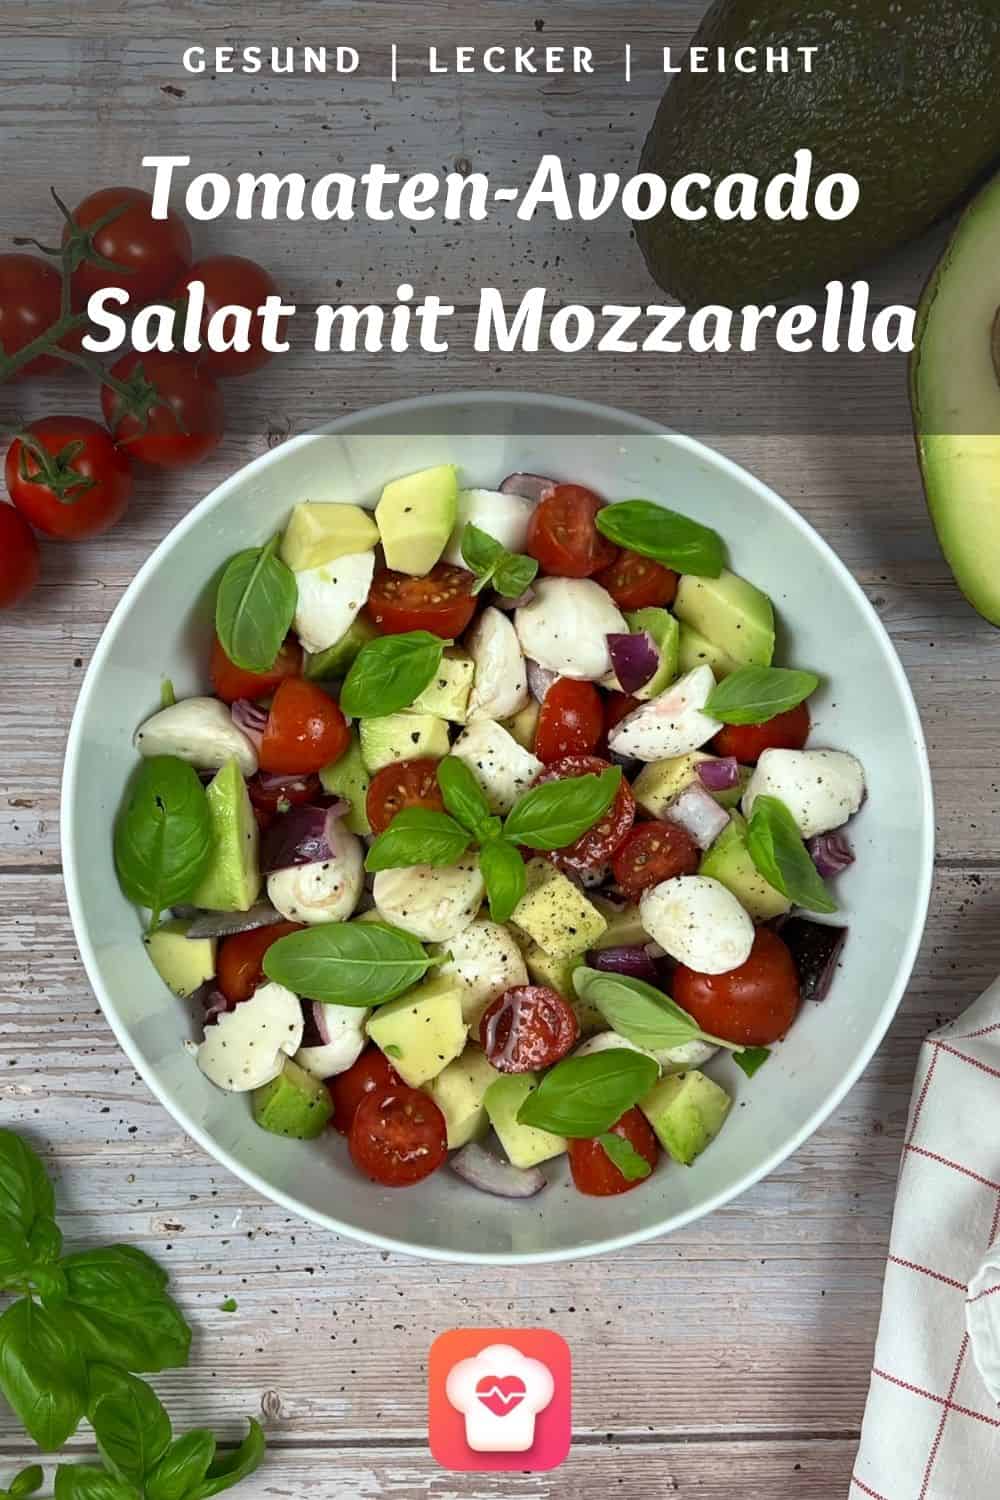 Tomaten-Avocado Salat mit Mozzarella - Schnell und einfach